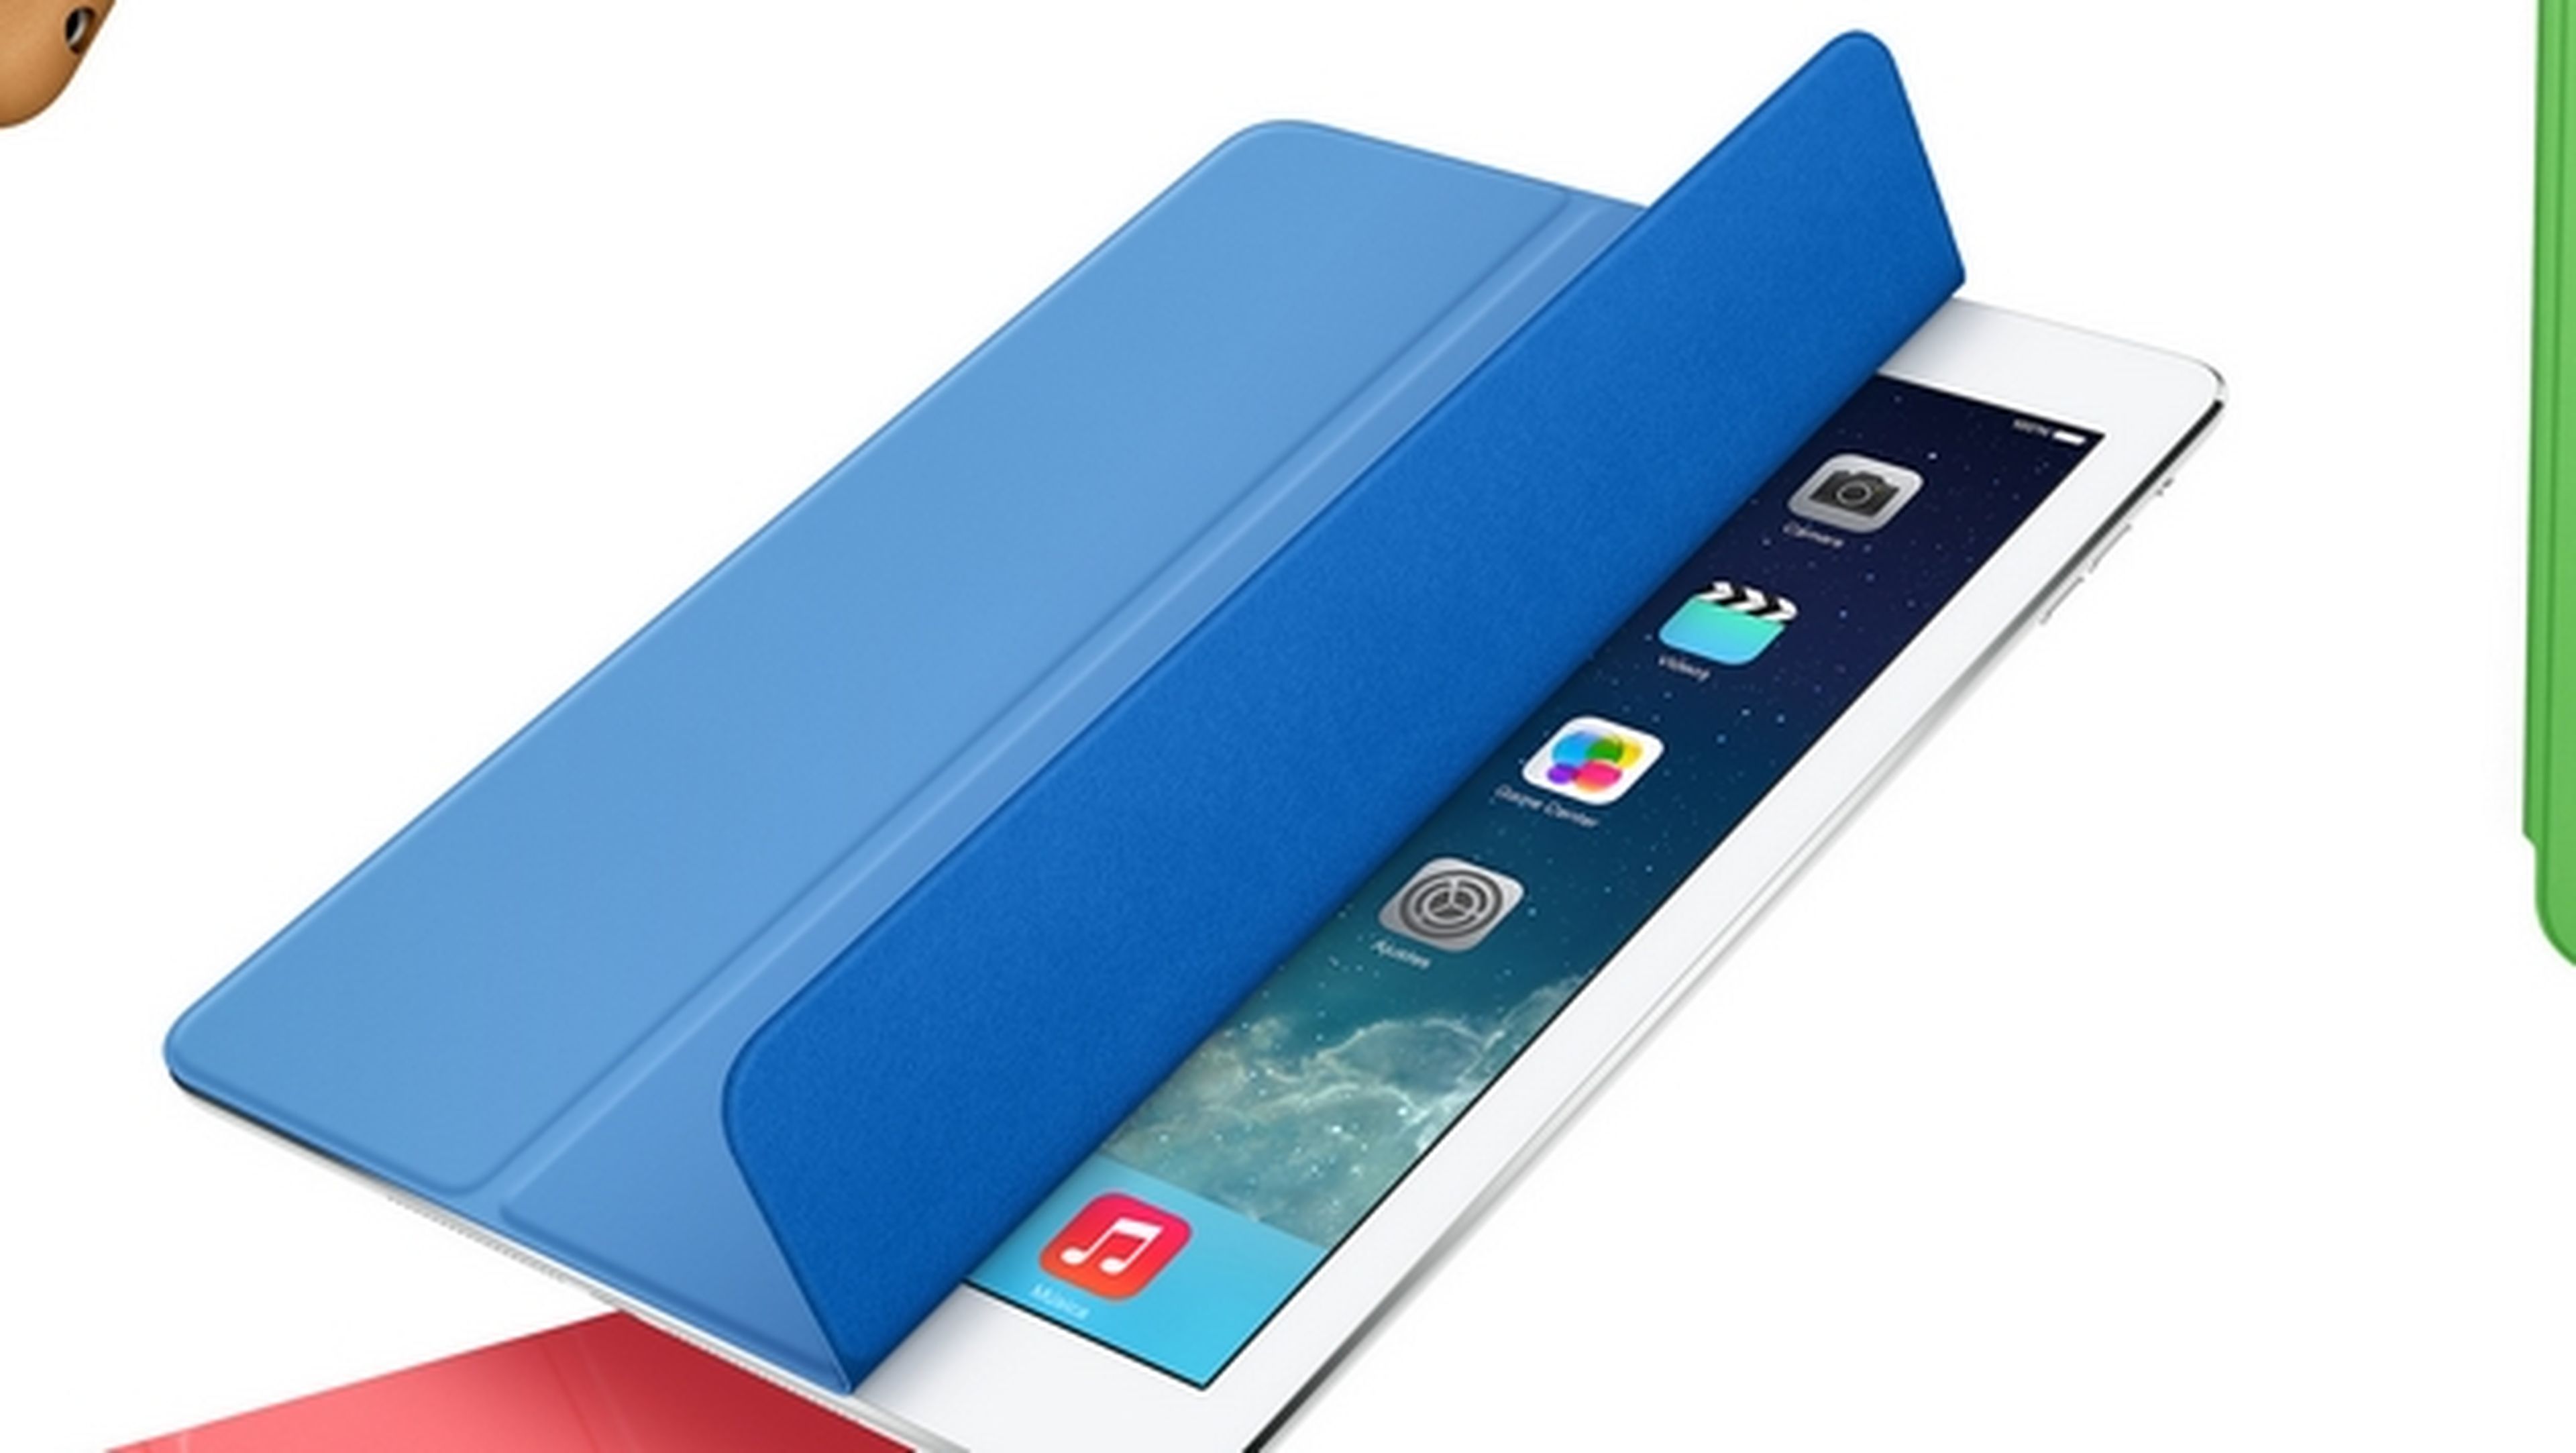 El iPad Air 2 podría llevar 2 GB de memoria RAM, para funciones multitarea en iOS 8.